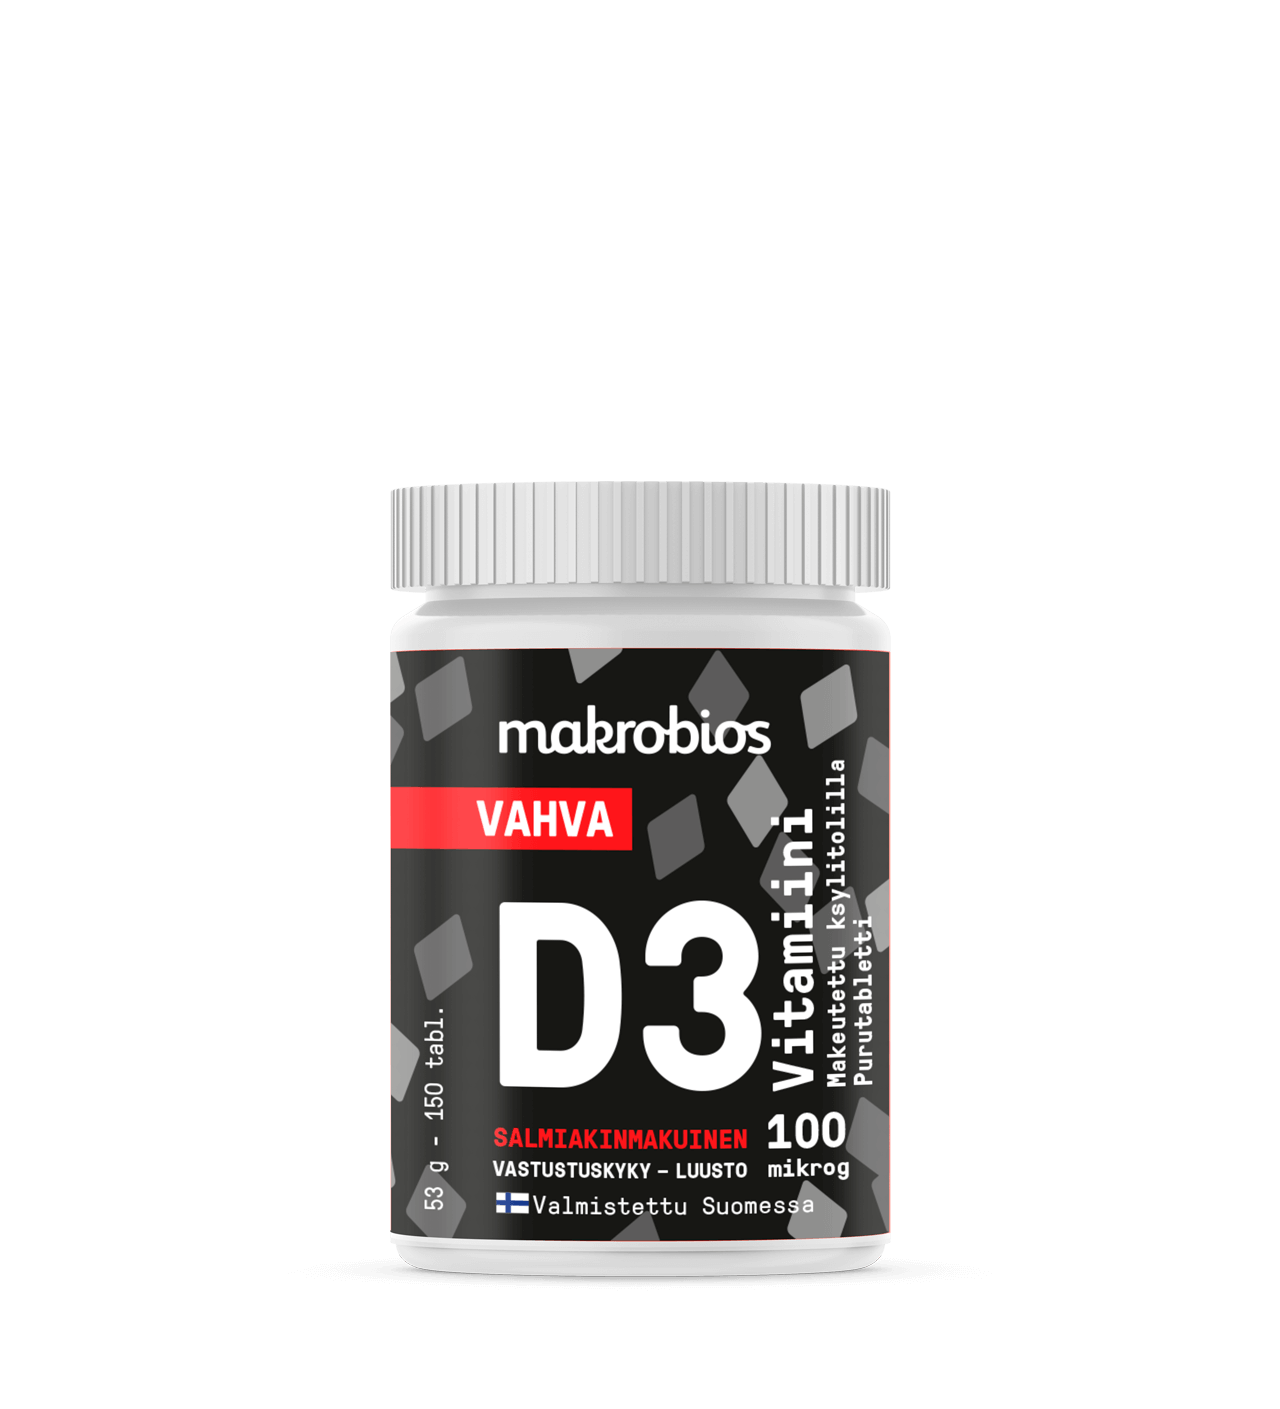 Makrobios Vahva D3 - vitamiini